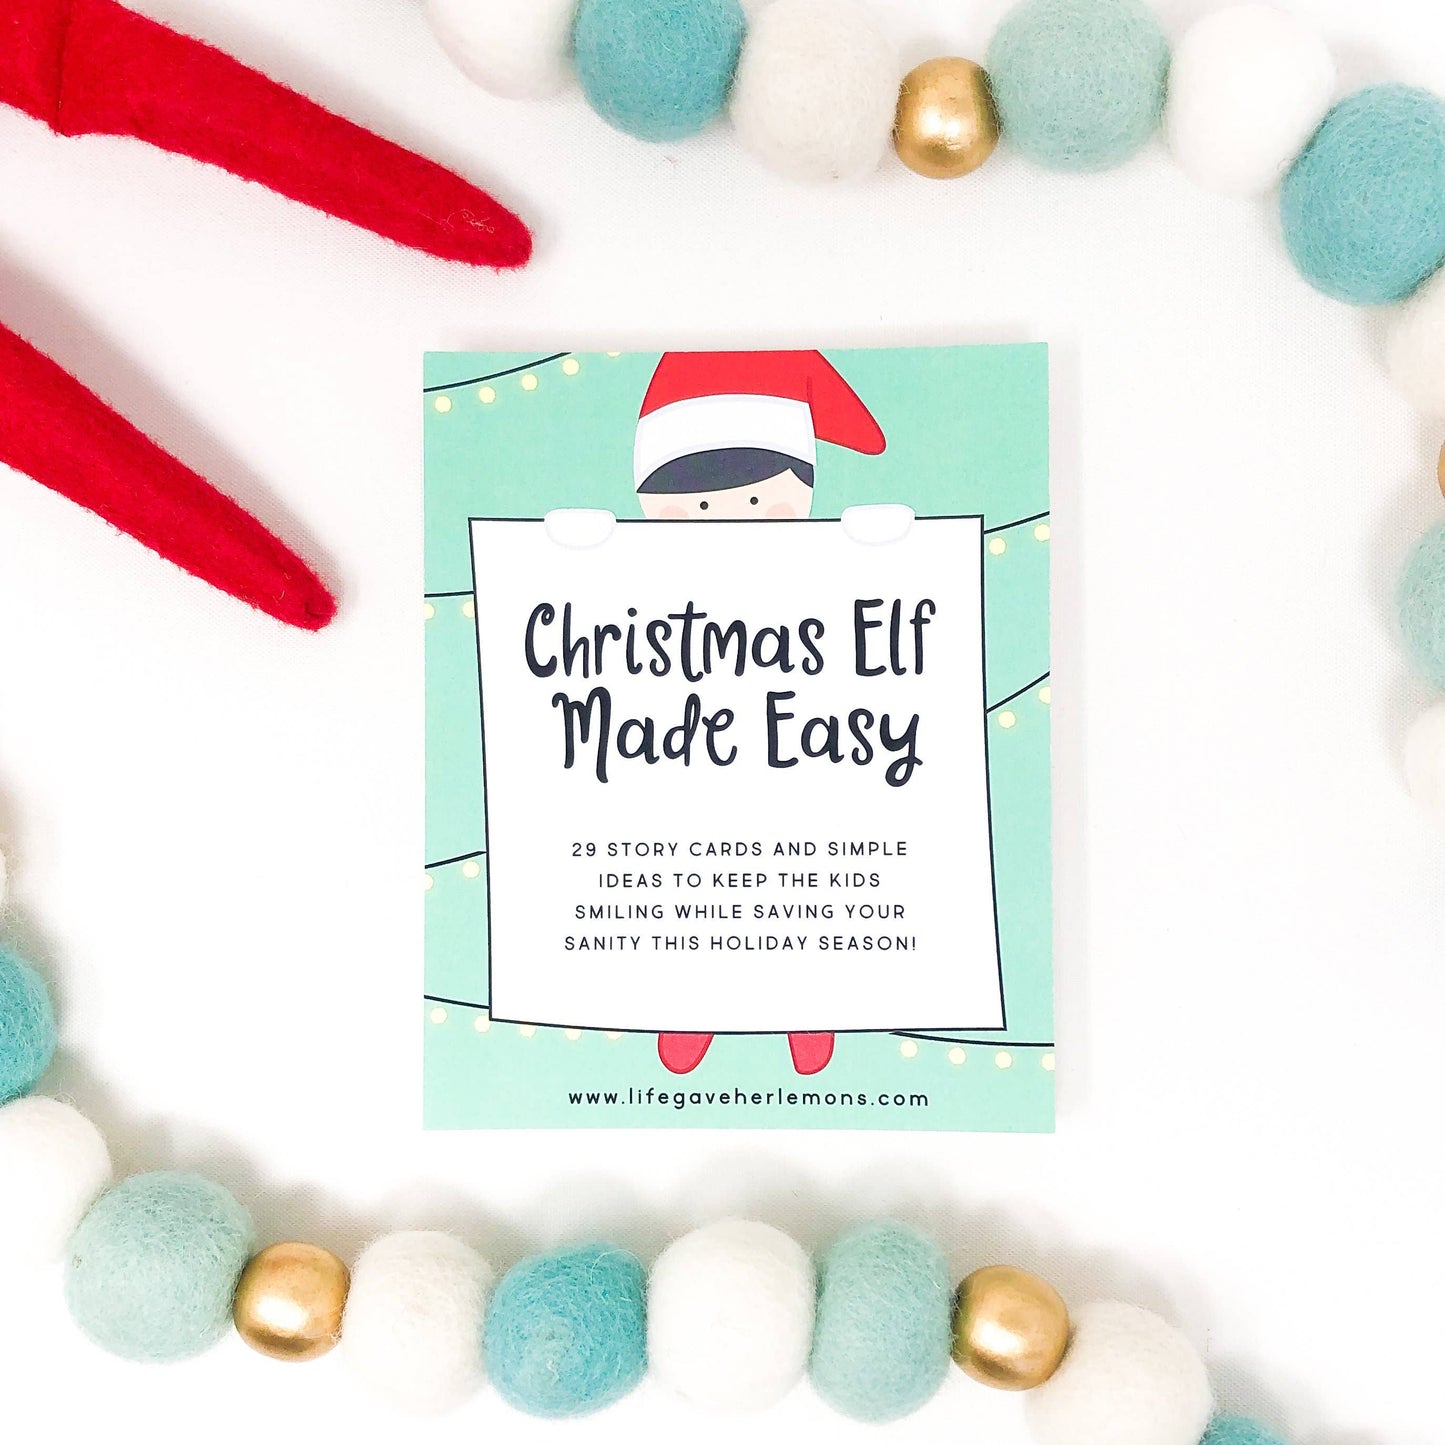 "Christmas Elf Made Easy" Cards